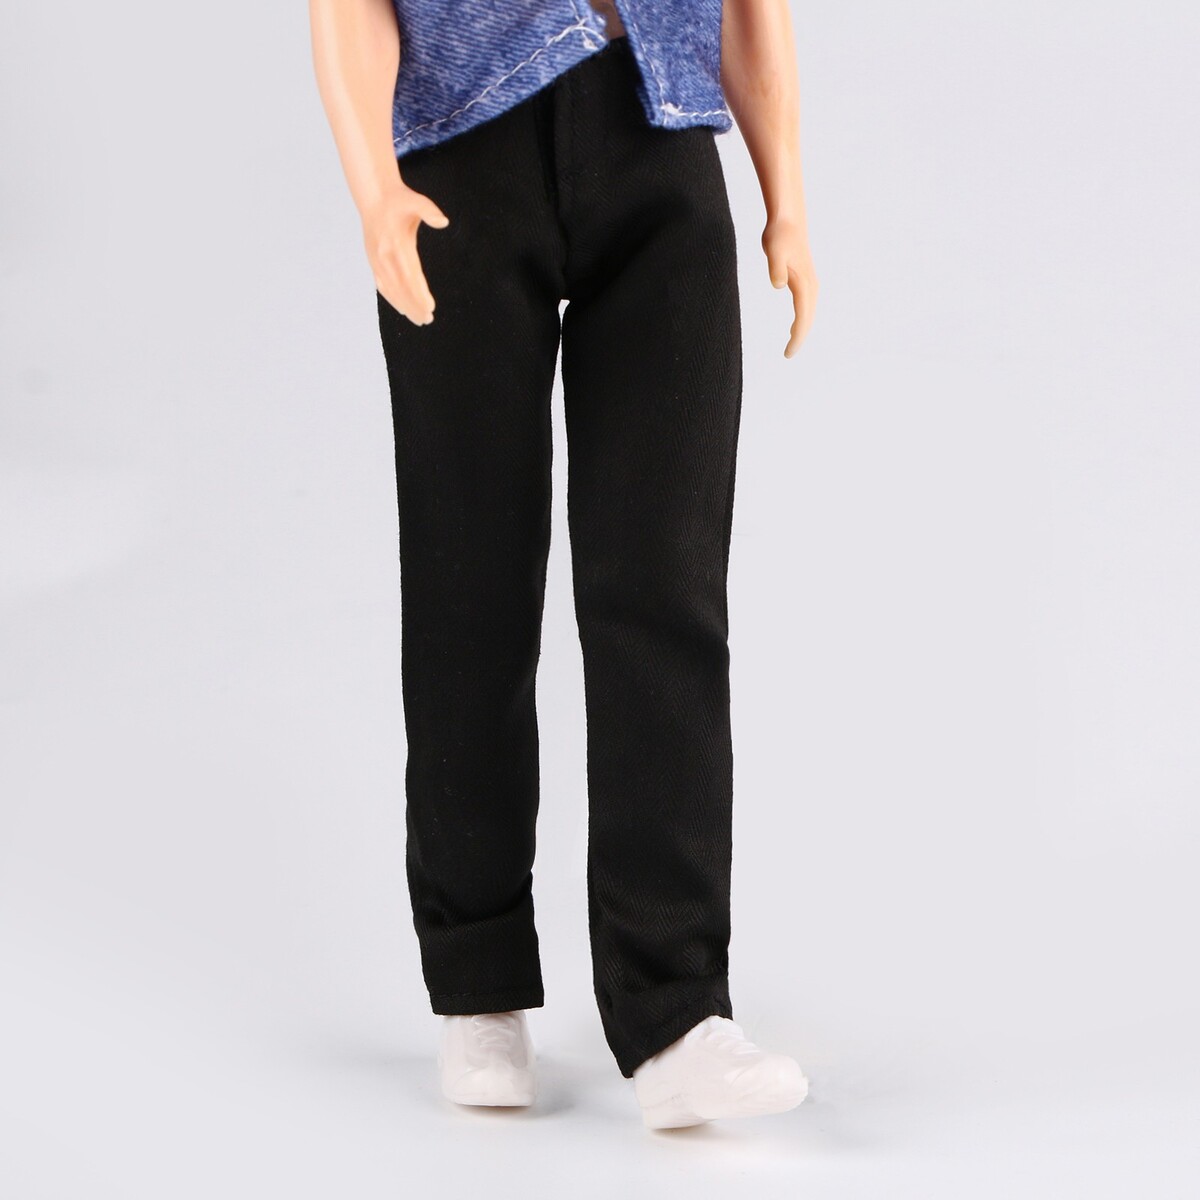 Джинсы для кукол мужчин, длина — 18 см, цвет черный tukitu комплект одежды для кукол весна осень пальто водолазка джинсы берет 40 см